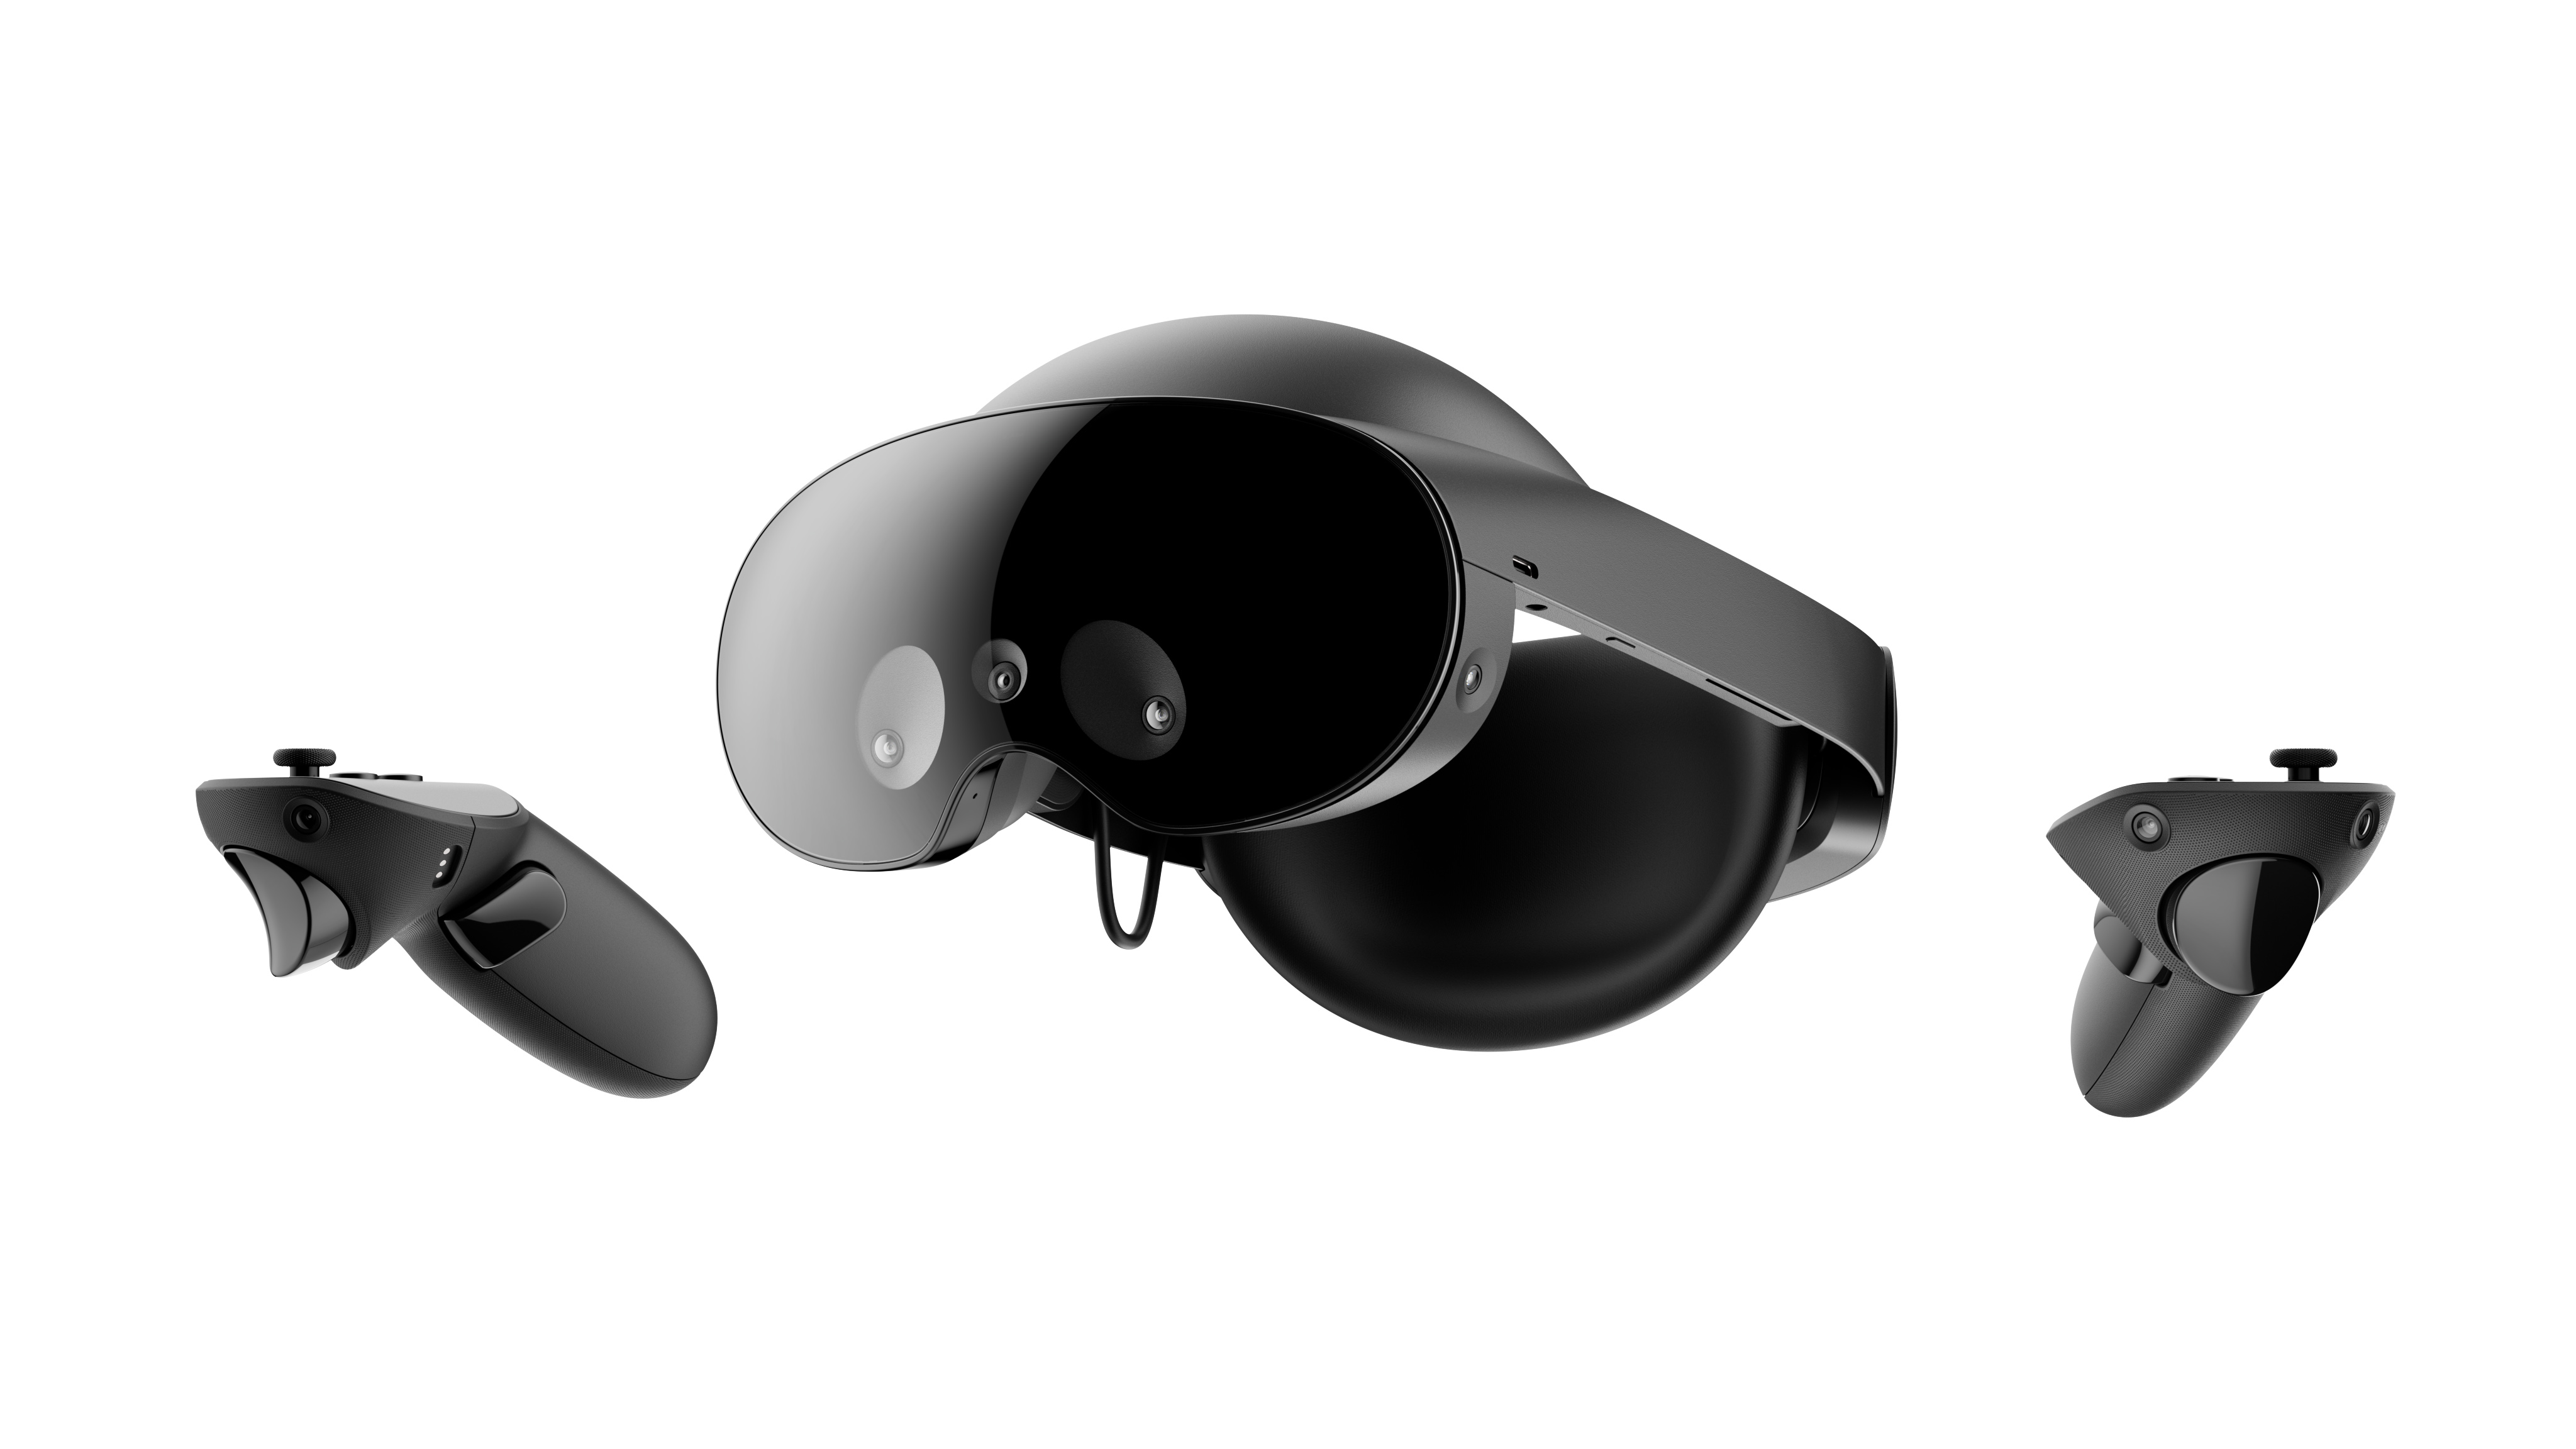 Presentando Meta Quest Pro, un dispositivo avanzado de VR para colaboración  y creación